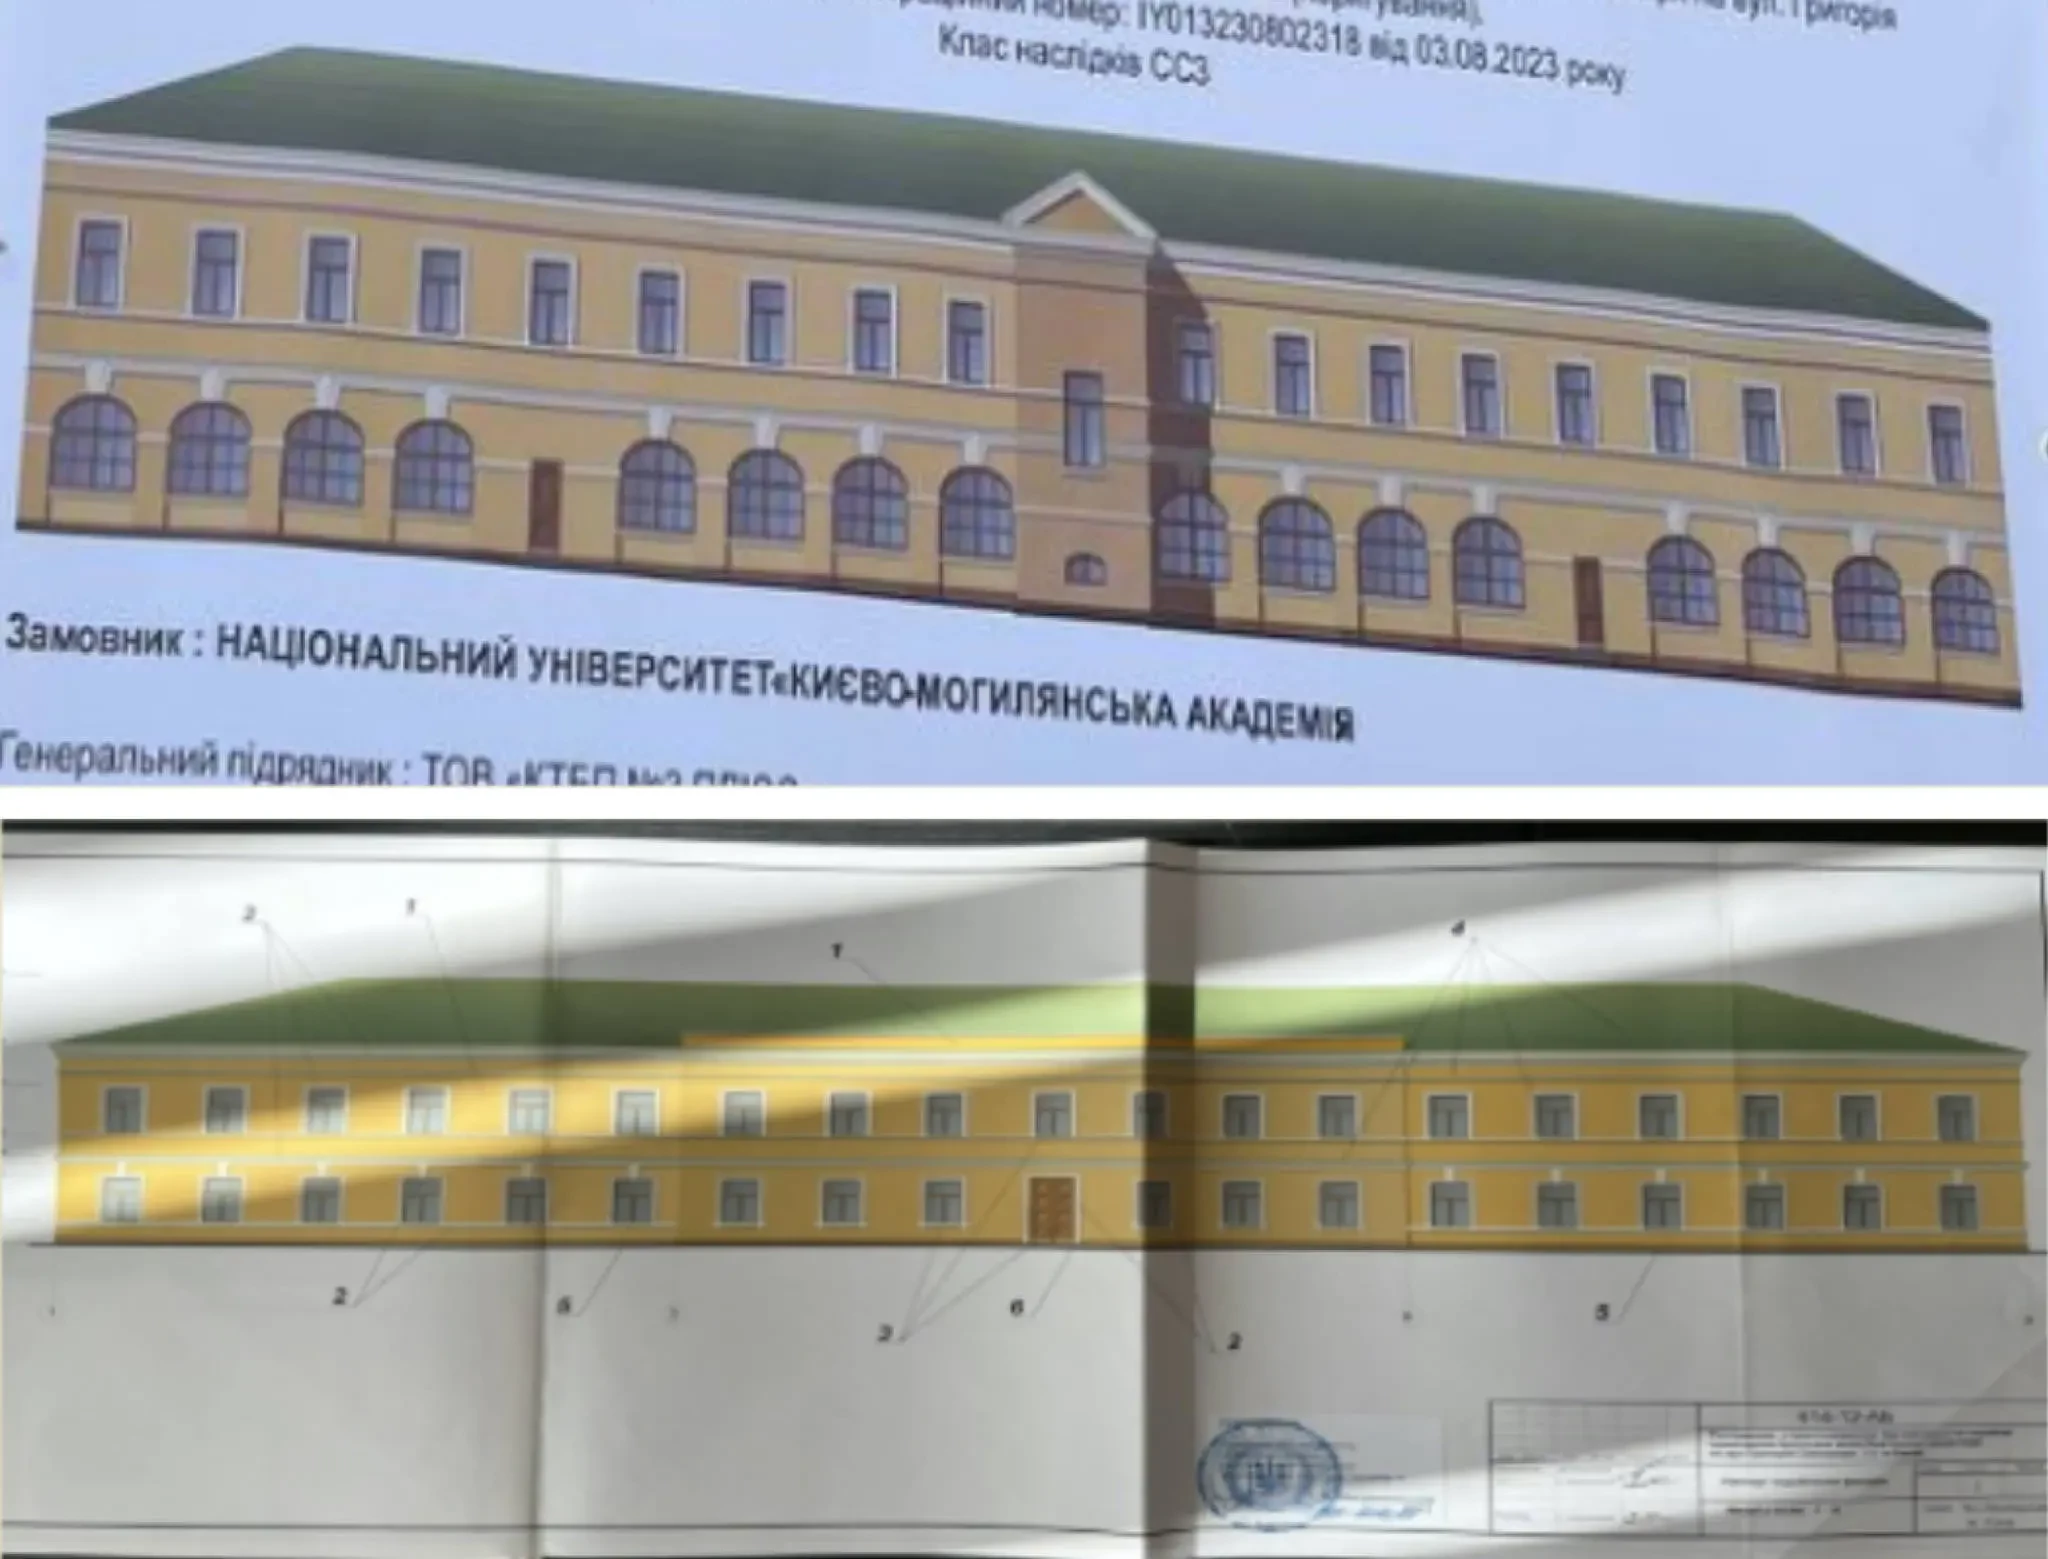 Що відбувається з однією із найстаріших будівель Києва - Києво-Могилянською академією? - зображення